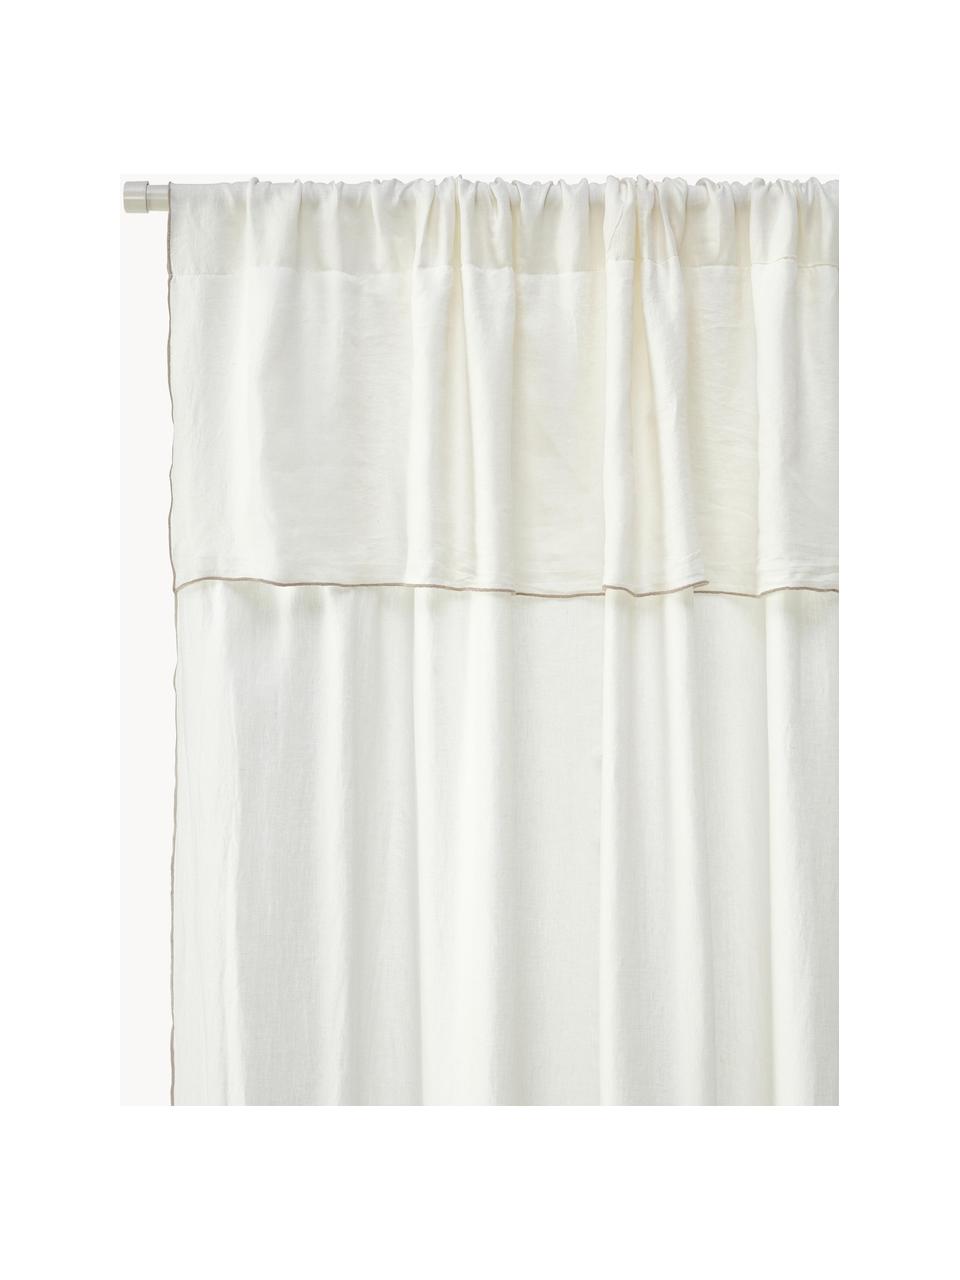 Cortinas semitransparente de lino con dobladillo Eleonara, 2 uds., 100% lino, Blanco crema, gris pardo, An 145 x L 260 cm